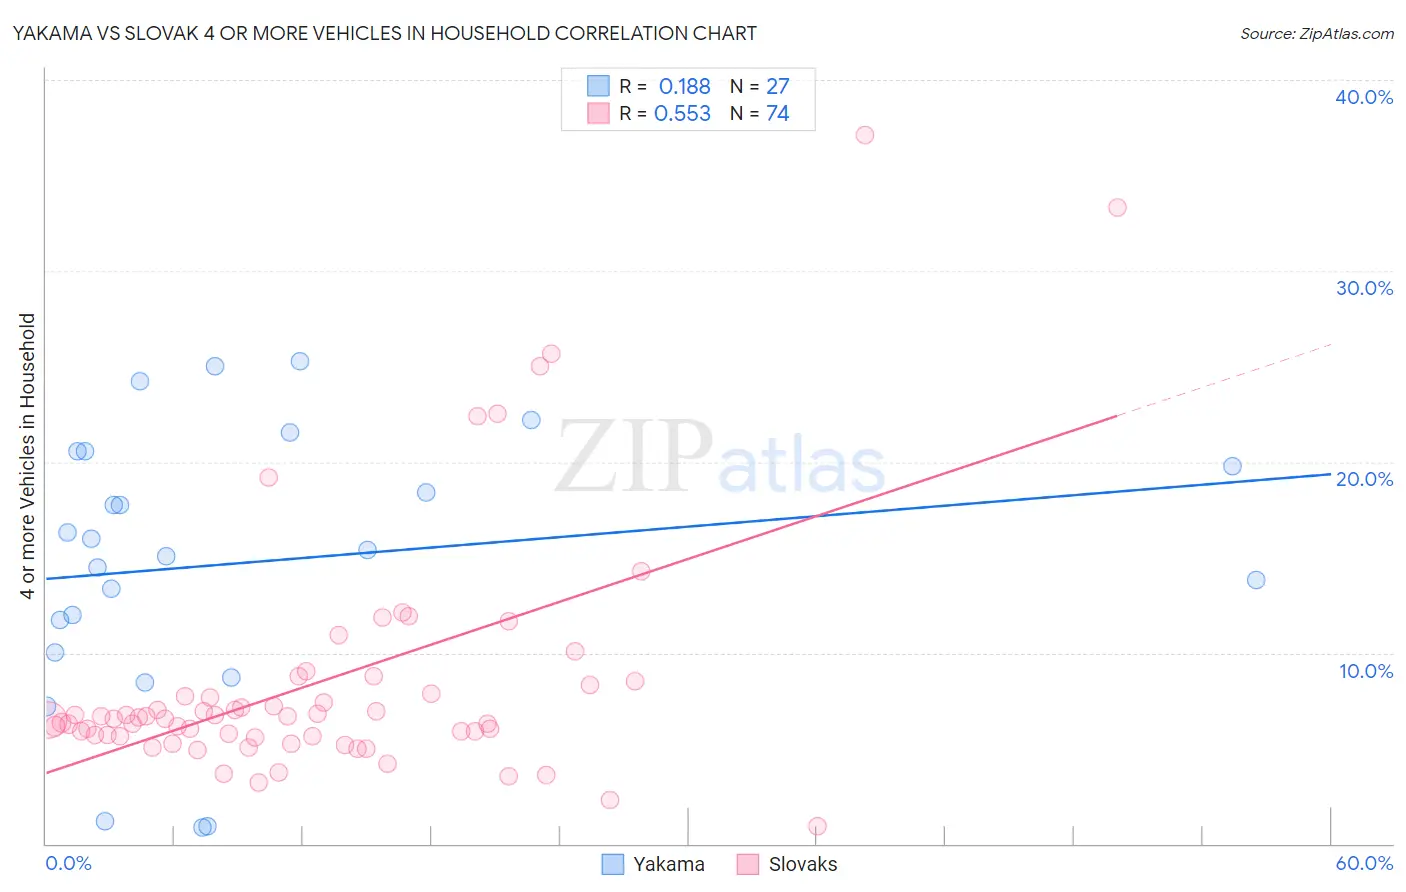 Yakama vs Slovak 4 or more Vehicles in Household